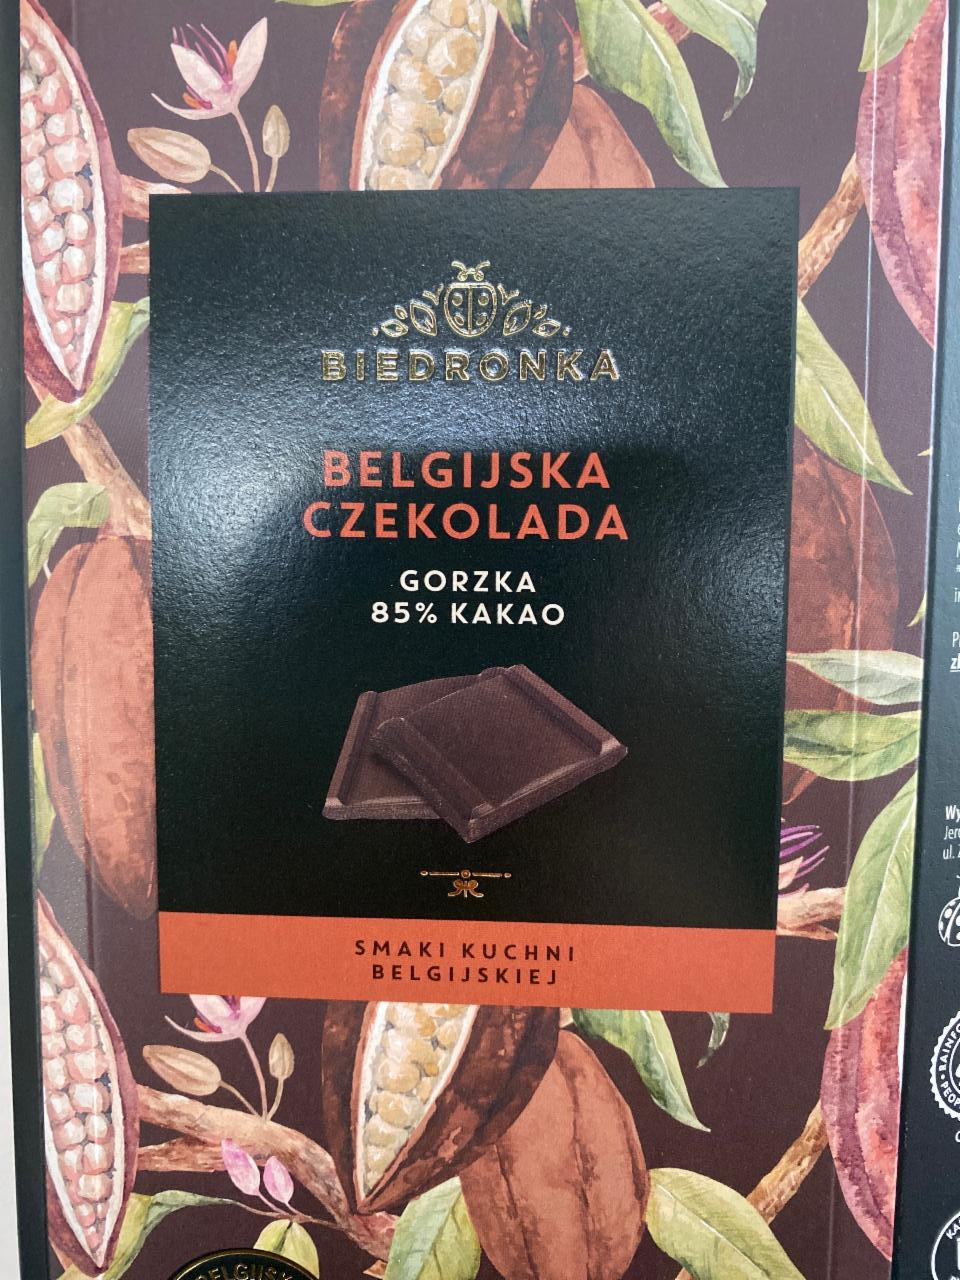 Zdjęcia - belgijska czekolada gorzka 85% kakao Biedronka